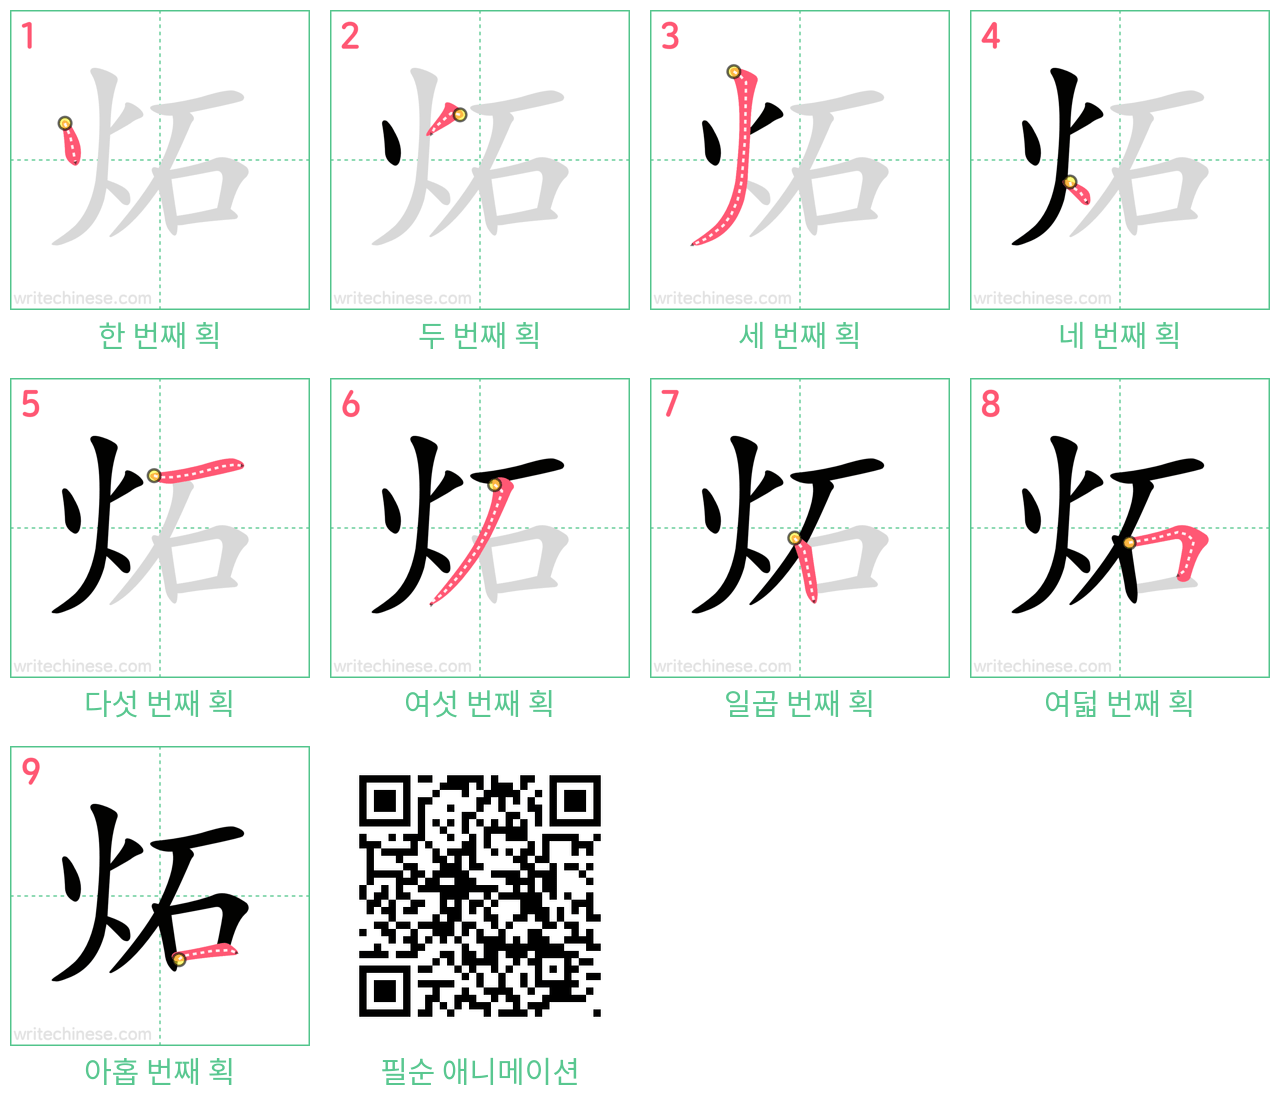 炻 step-by-step stroke order diagrams